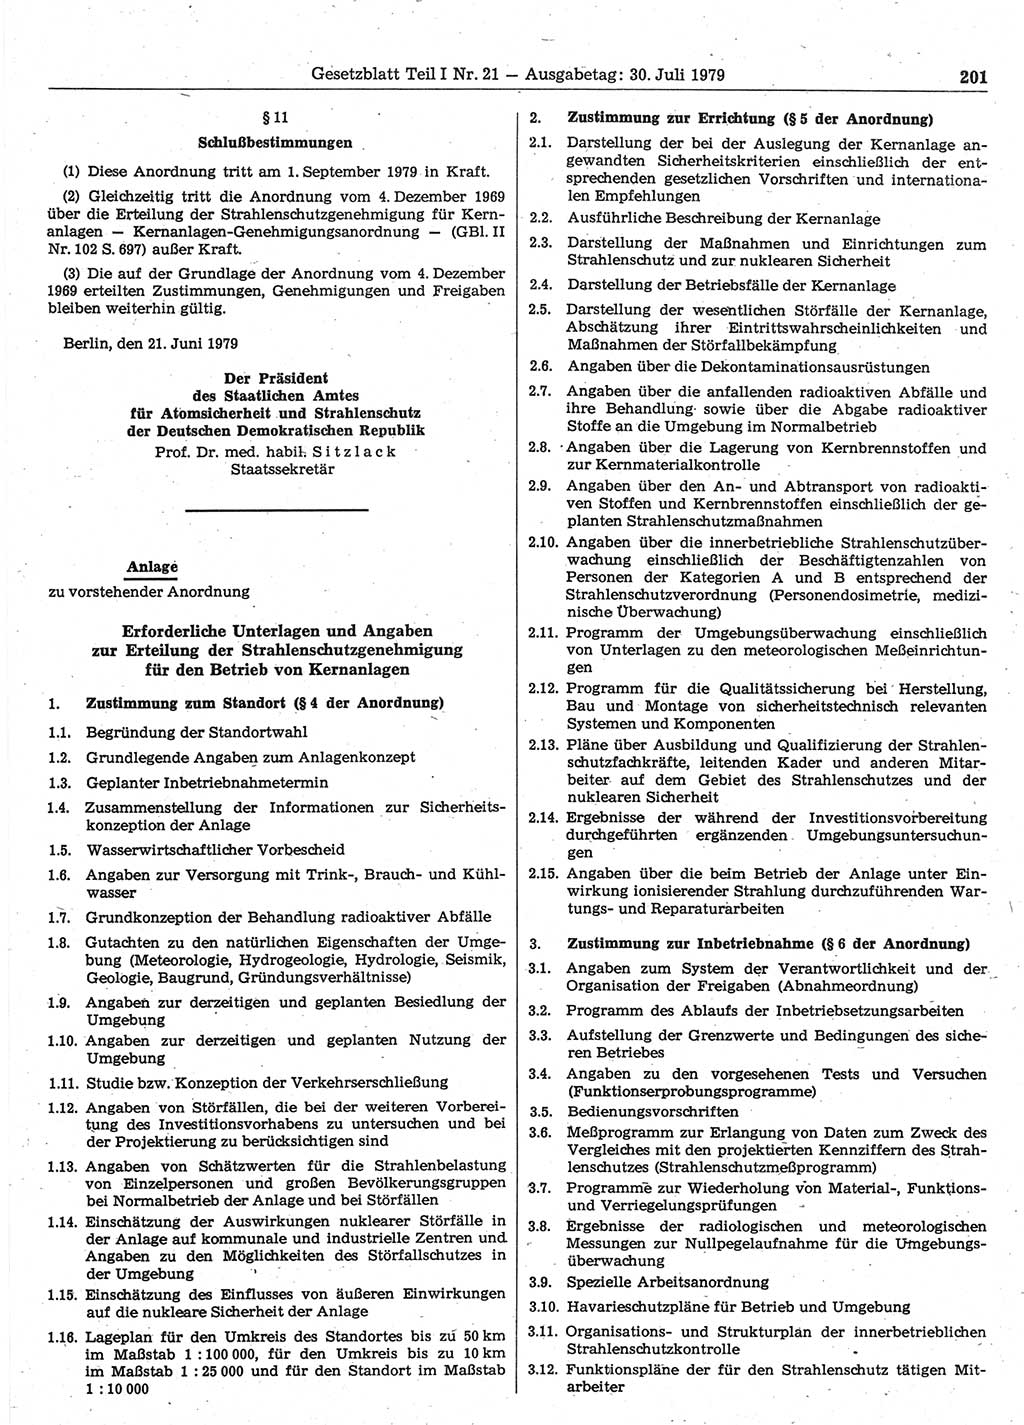 Gesetzblatt (GBl.) der Deutschen Demokratischen Republik (DDR) Teil Ⅰ 1979, Seite 201 (GBl. DDR Ⅰ 1979, S. 201)